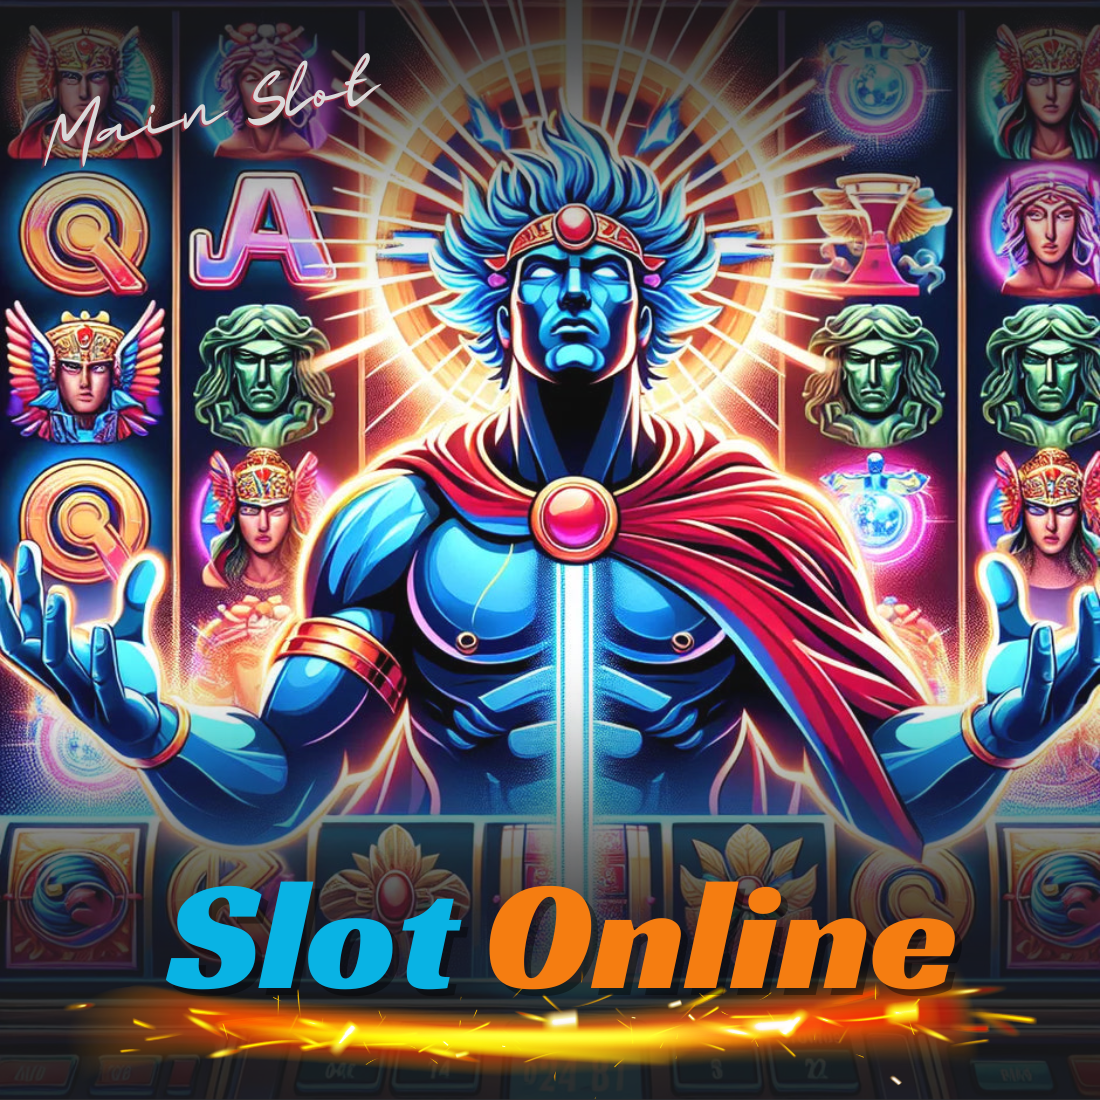 Bermain Slot Online: Tips Hemat Bermain Slot